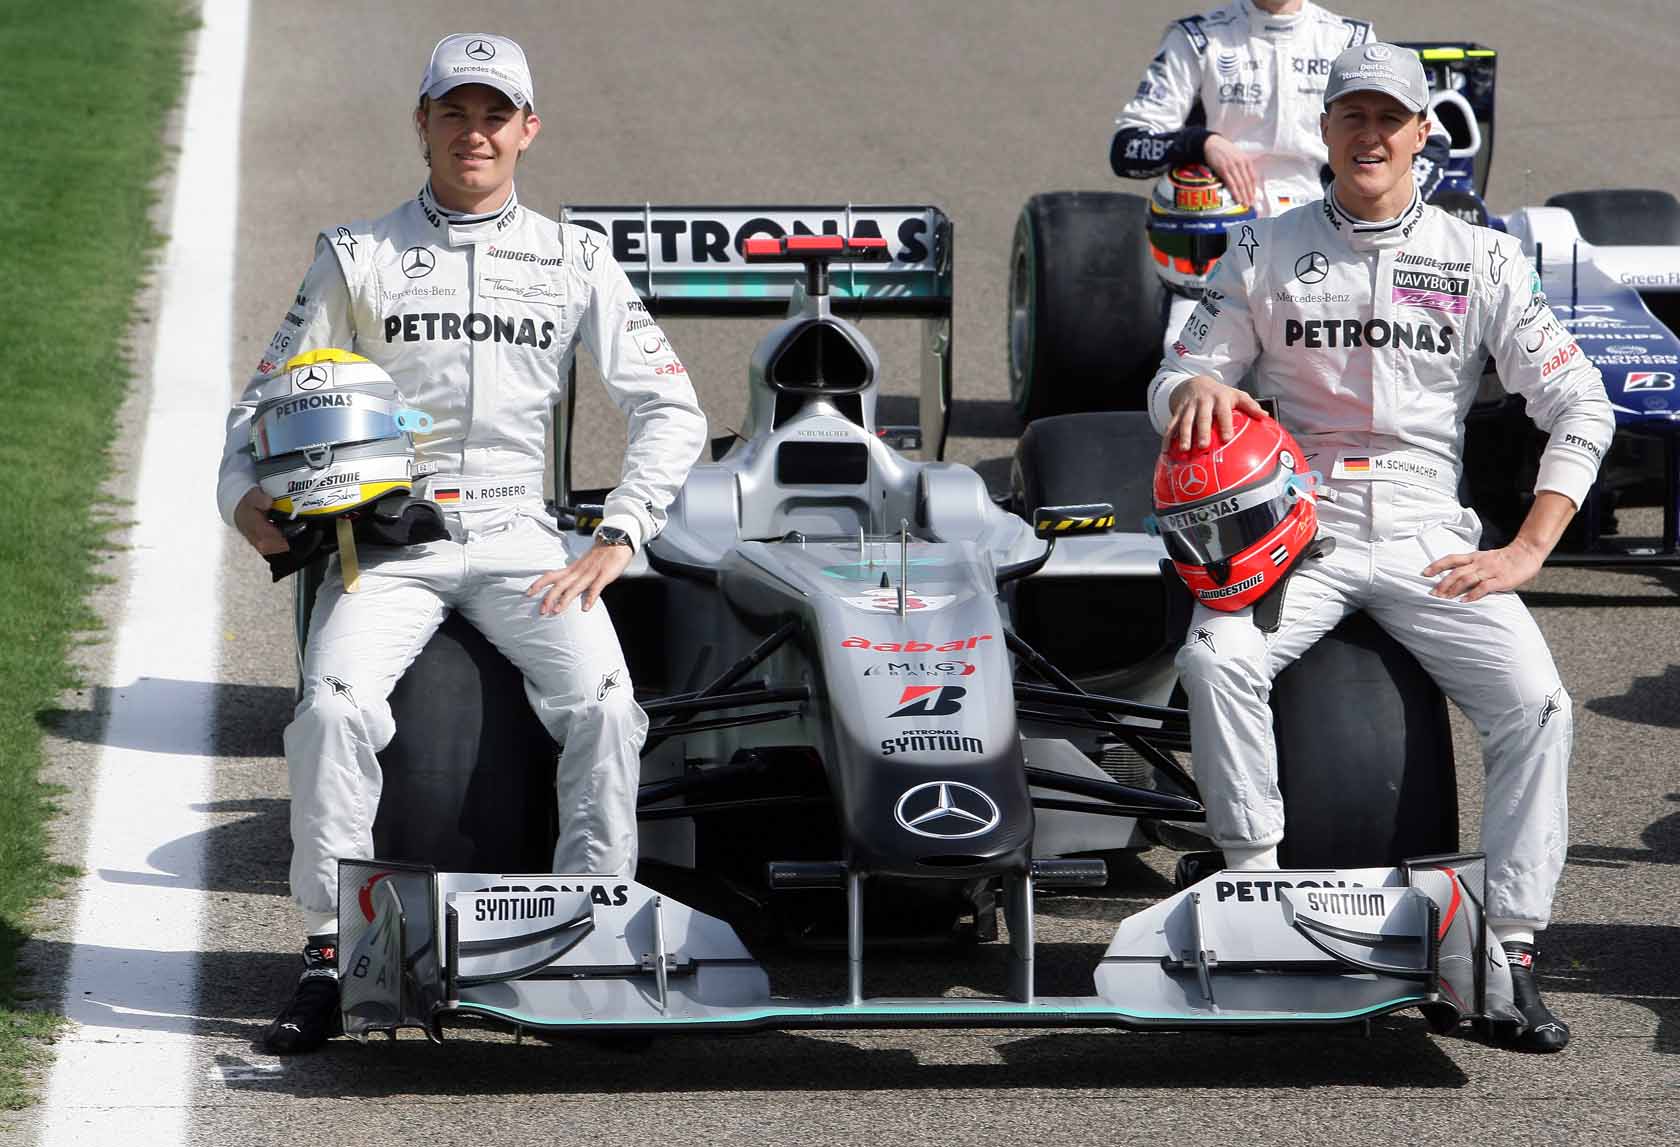 Motorsports / Formula 1: World Championship 2010, GP of Bahrain, 03 Michael Schumacher (GER, Mercedes GP Petronas),   04 Nico Rosberg (GER, Mercedes GP Petronas),  *** Local Caption *** +++ www.hoch-zwei.net +++ copyright: HOCH ZWEI +++